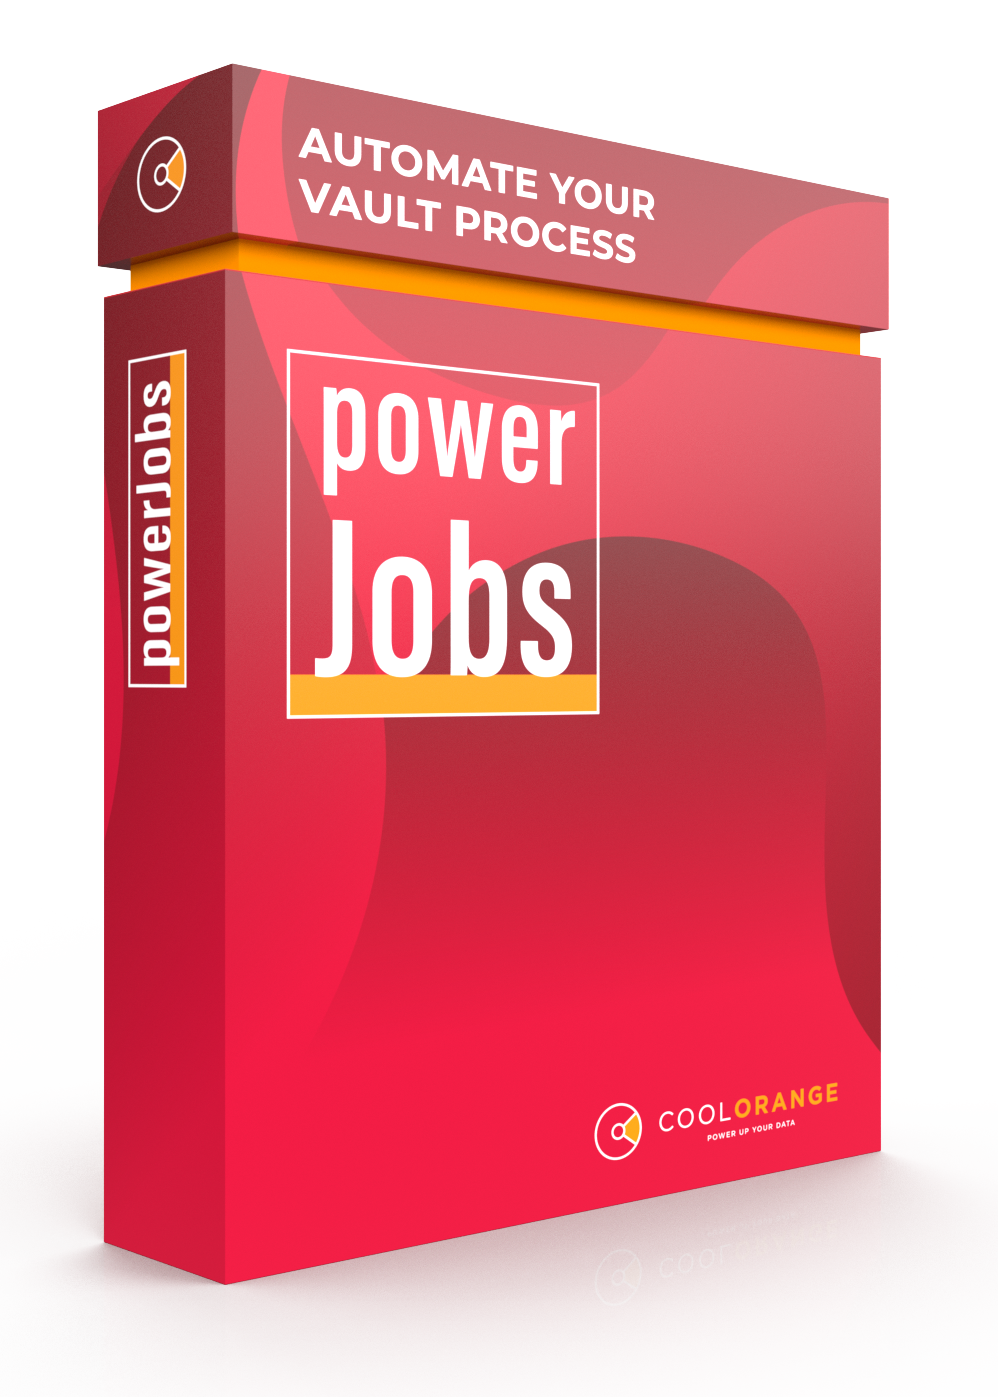 powerjobs automatisiert die Veröffentlichung von Autodesk Vault-Dateien und Arbeitsabläufe